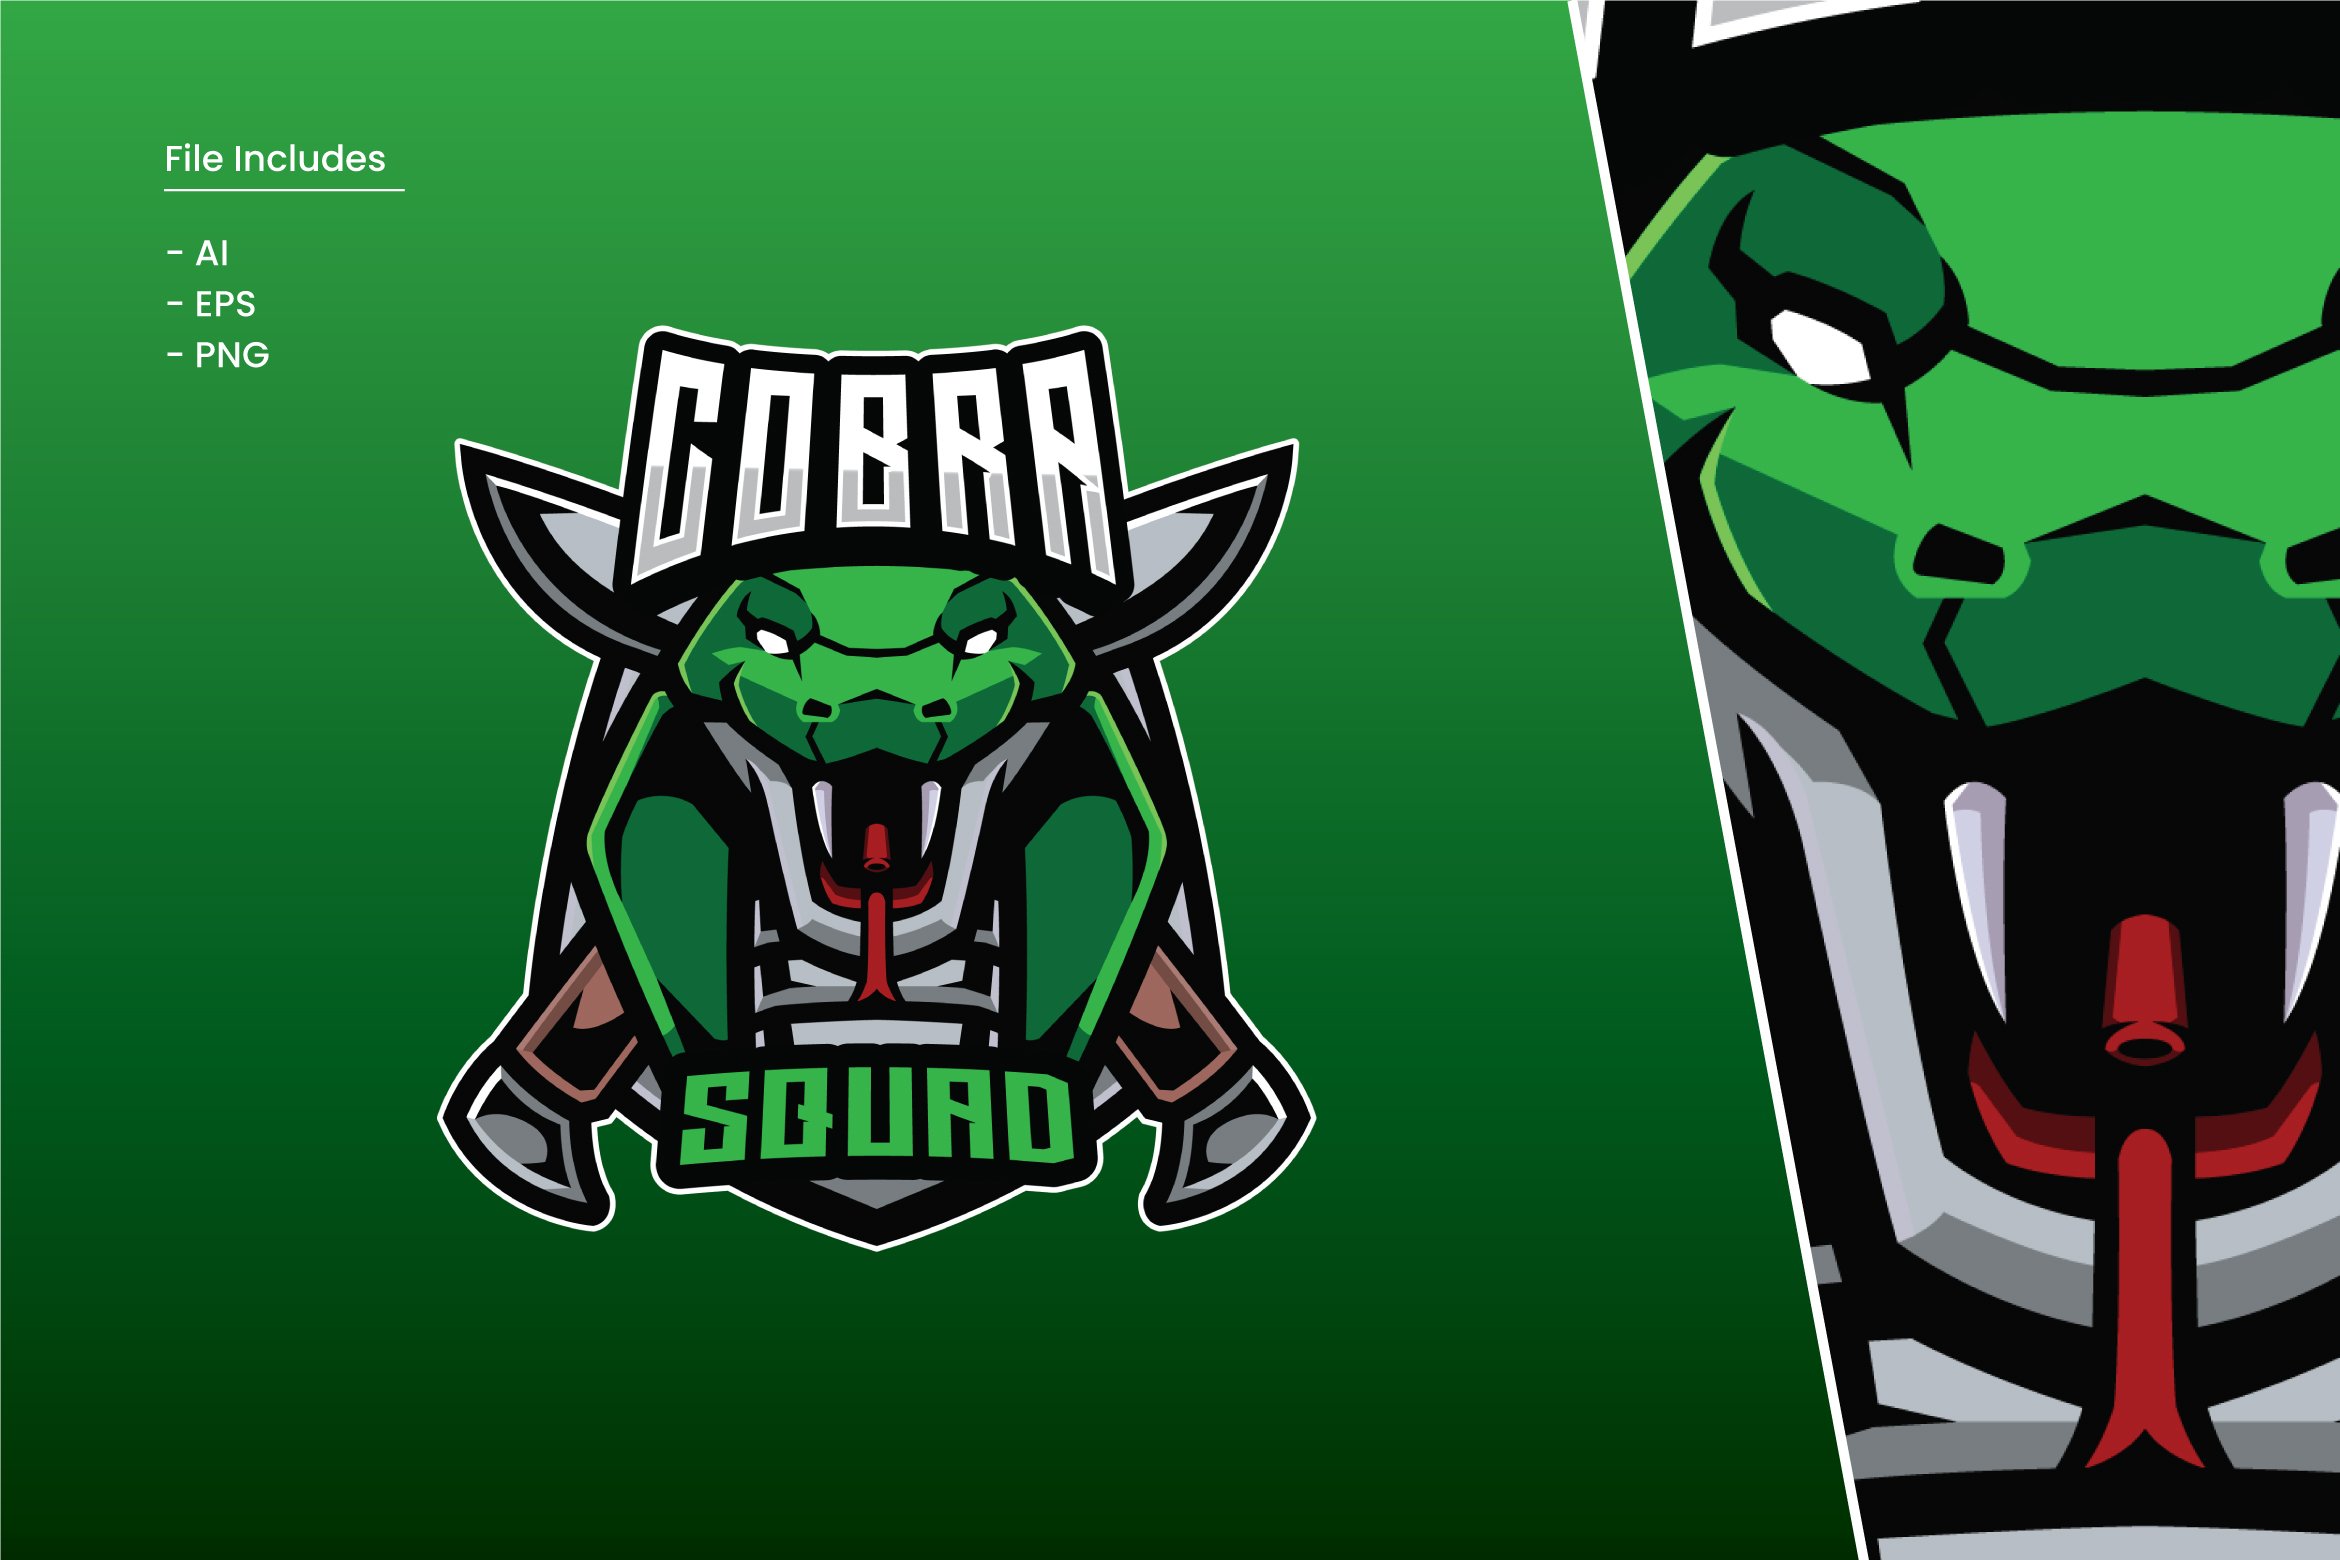 Cobra Squad Logo Template cover image.